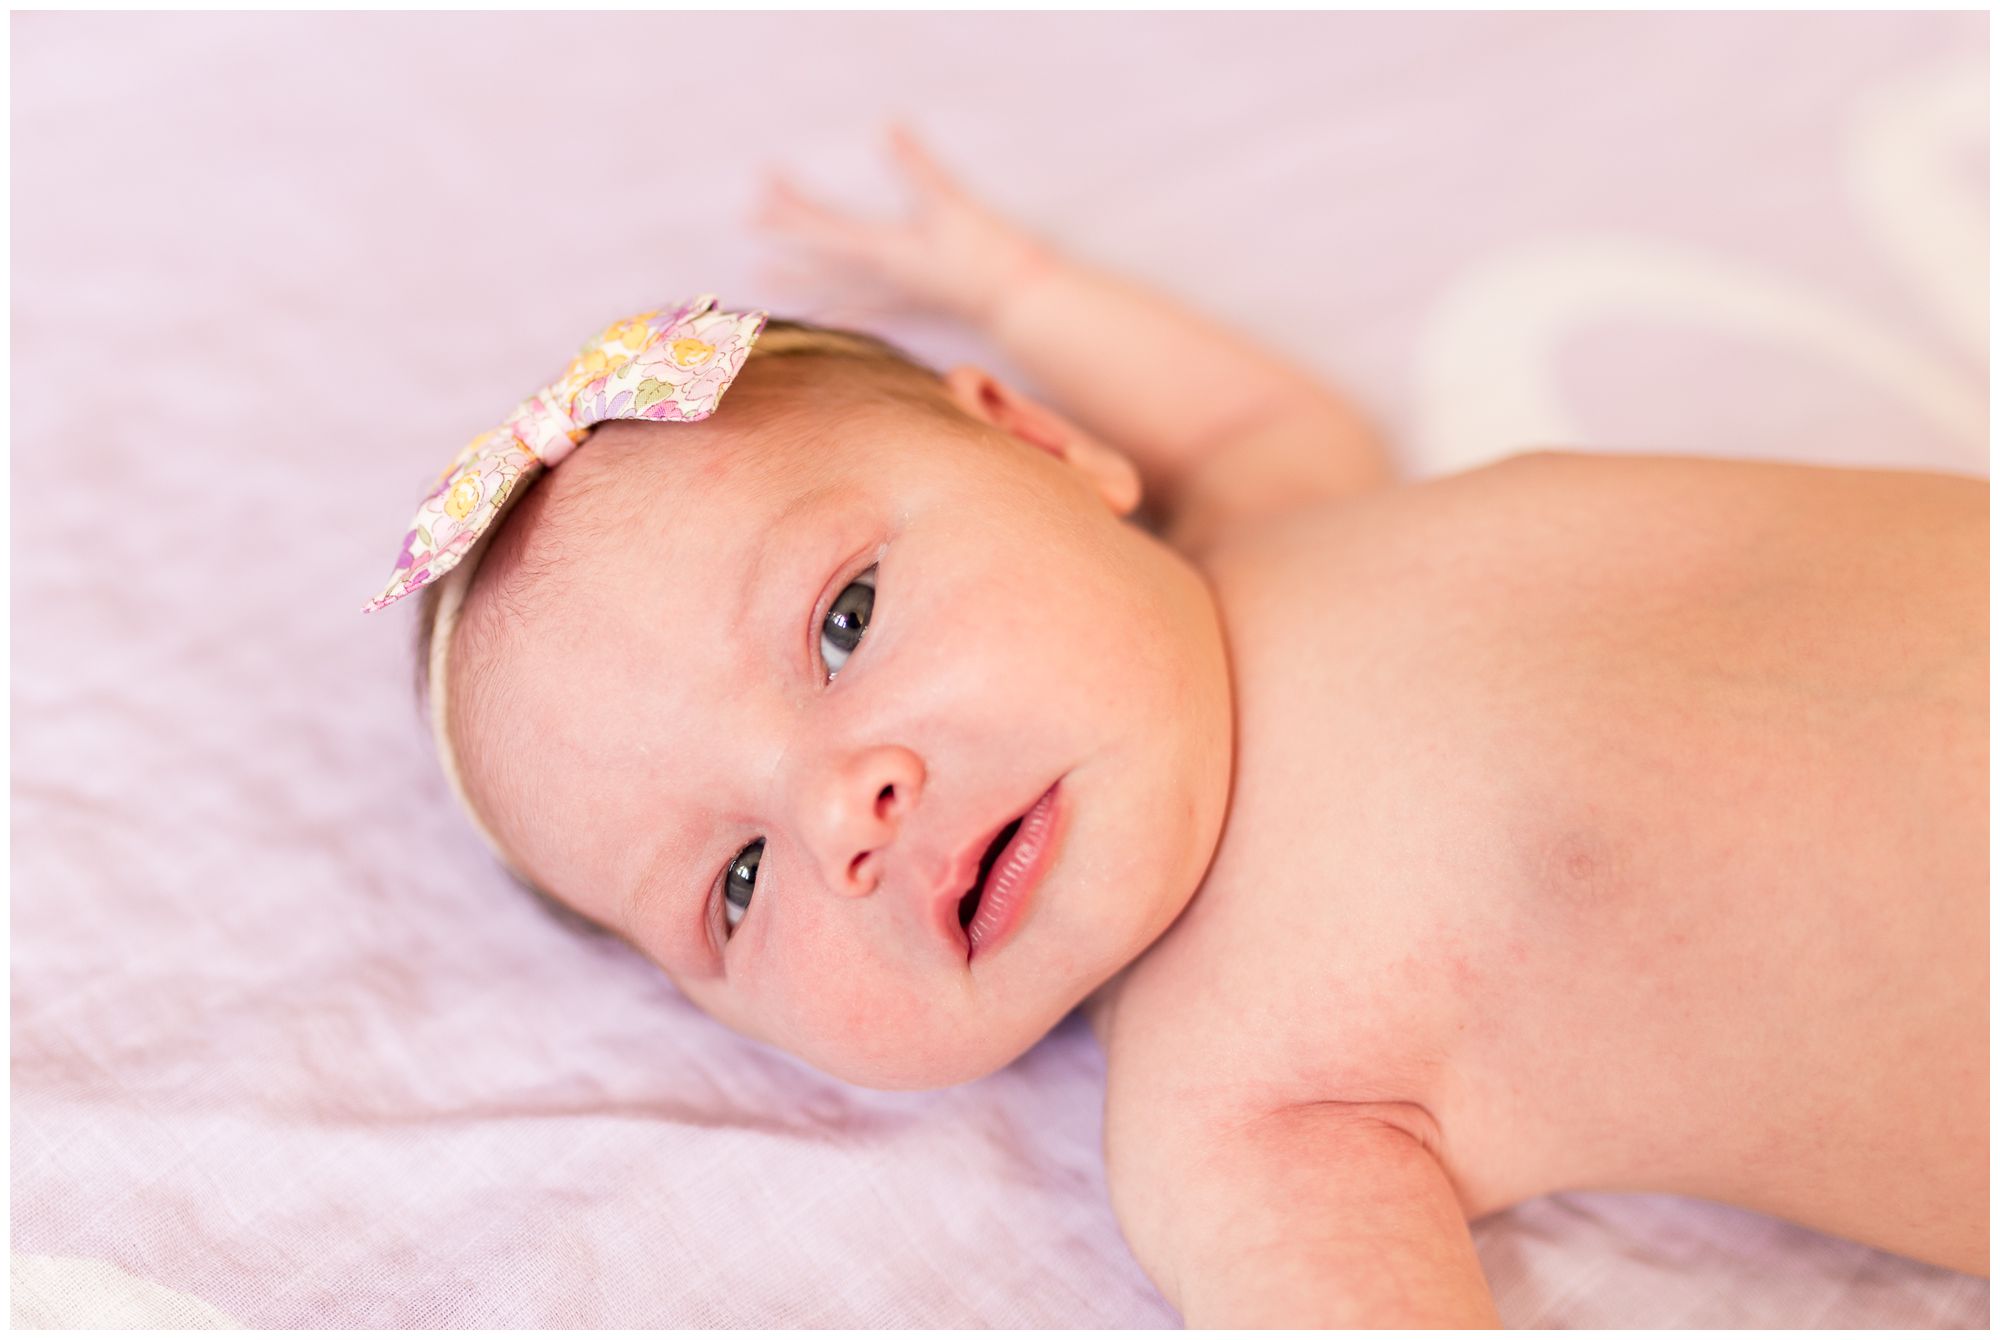 Westfield newborn photographer captures newborn with open eyes